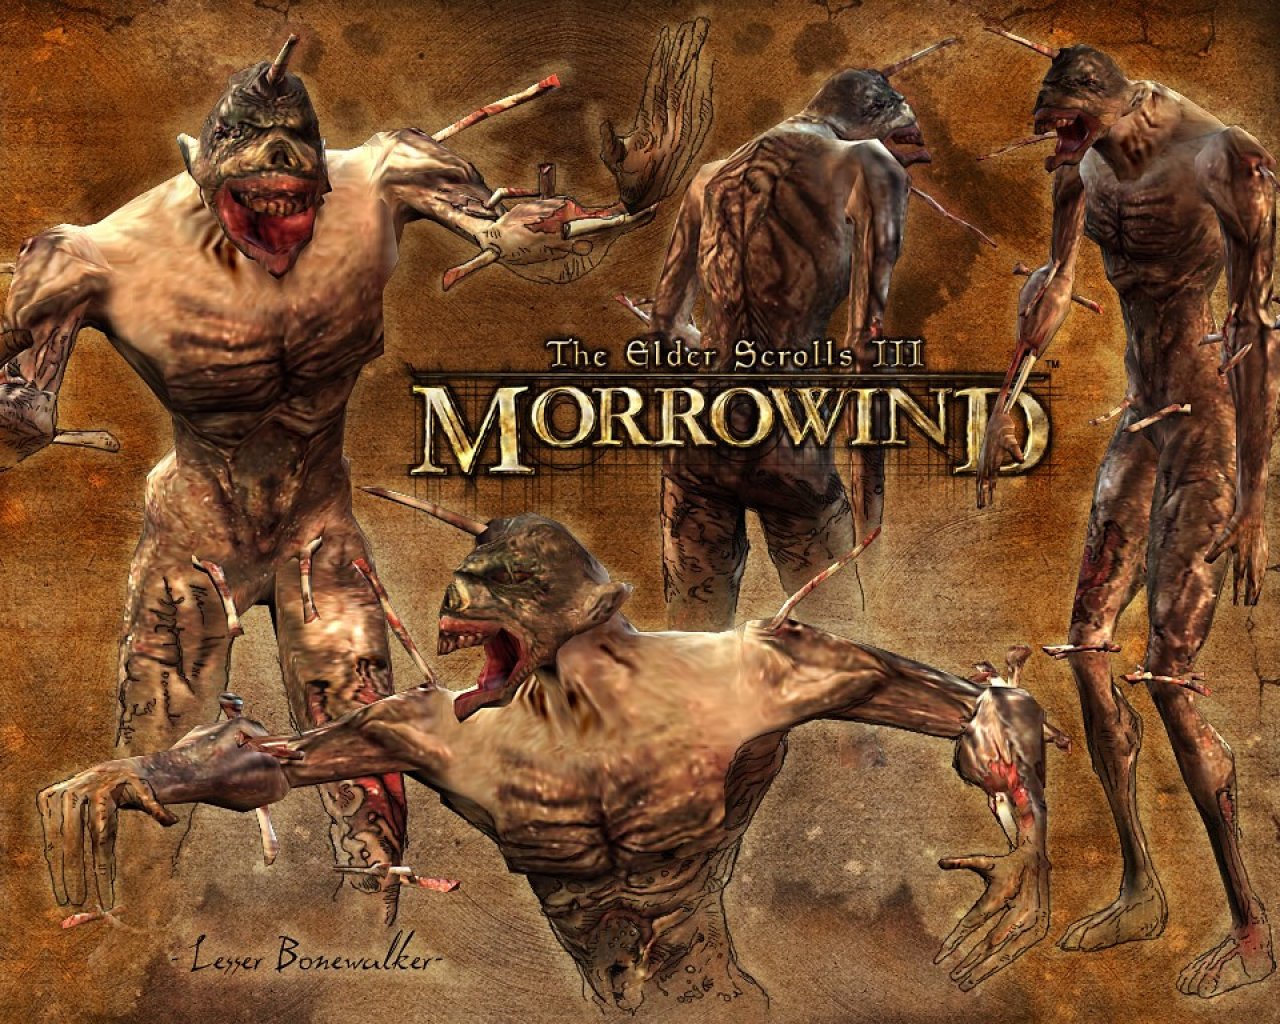 Wallpaper The Elder Scrolls III: Morrowind "Lesser bonewalker"